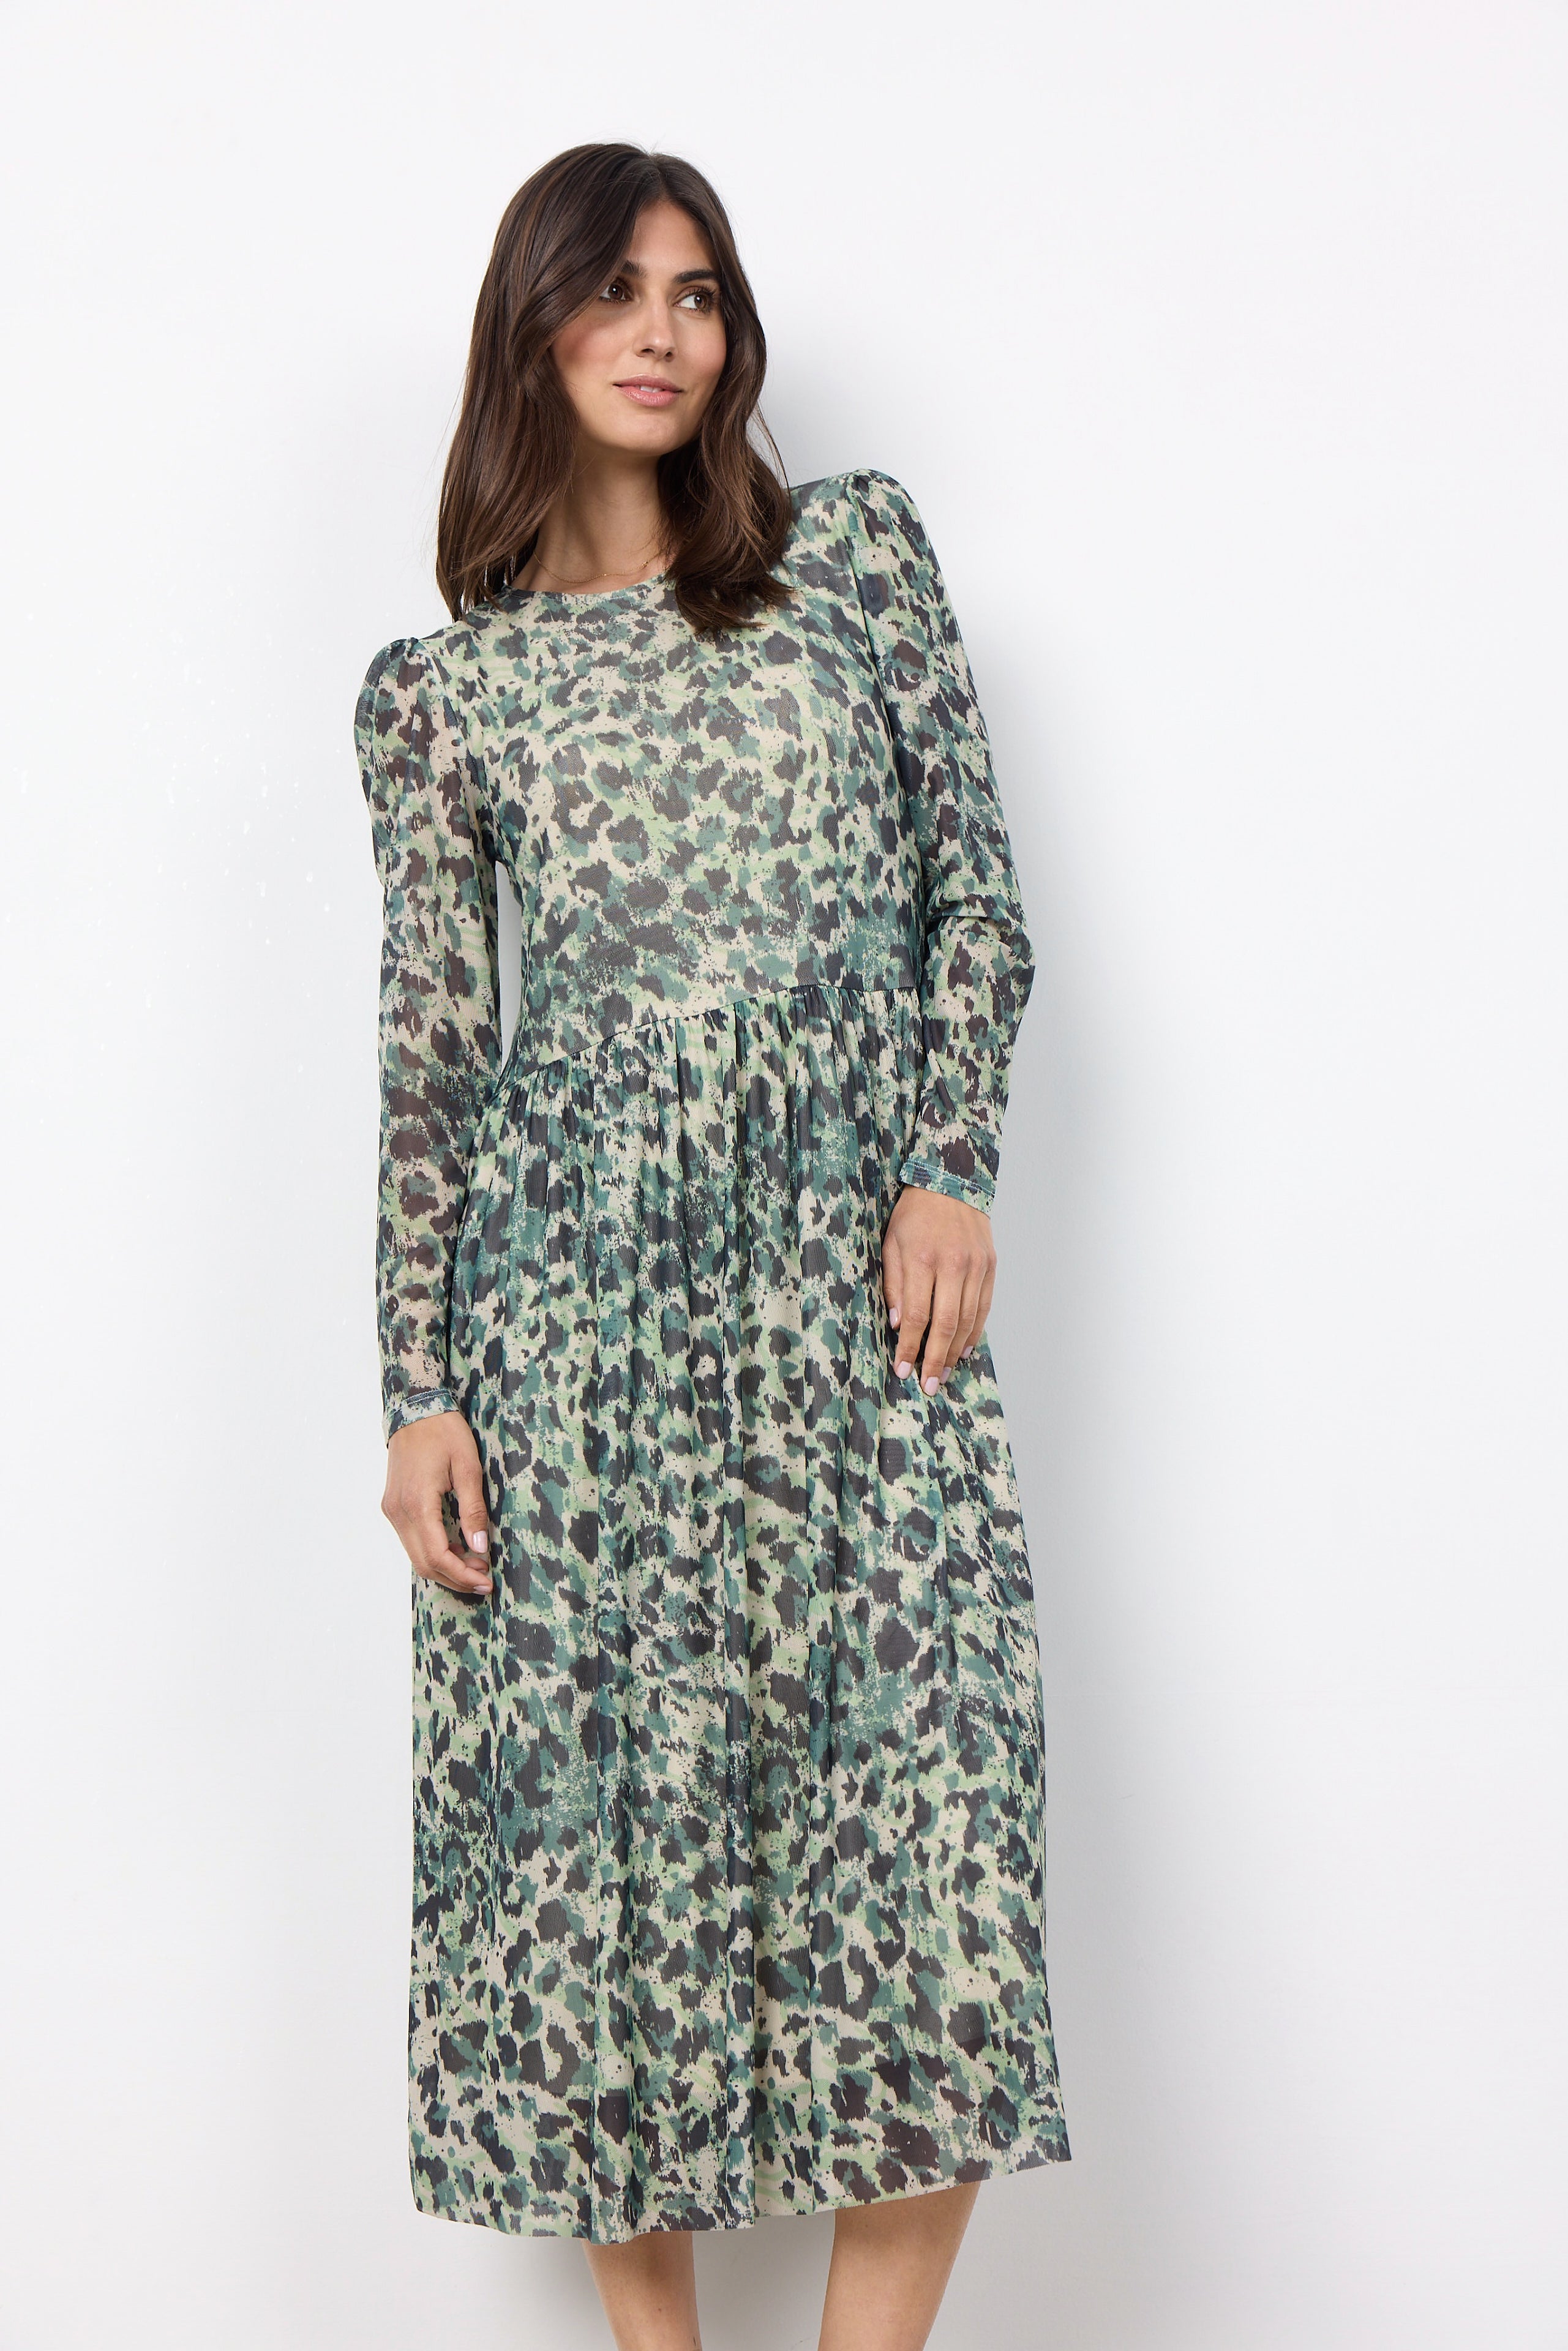 Alda AOP 50 Green Print Dress - 26401